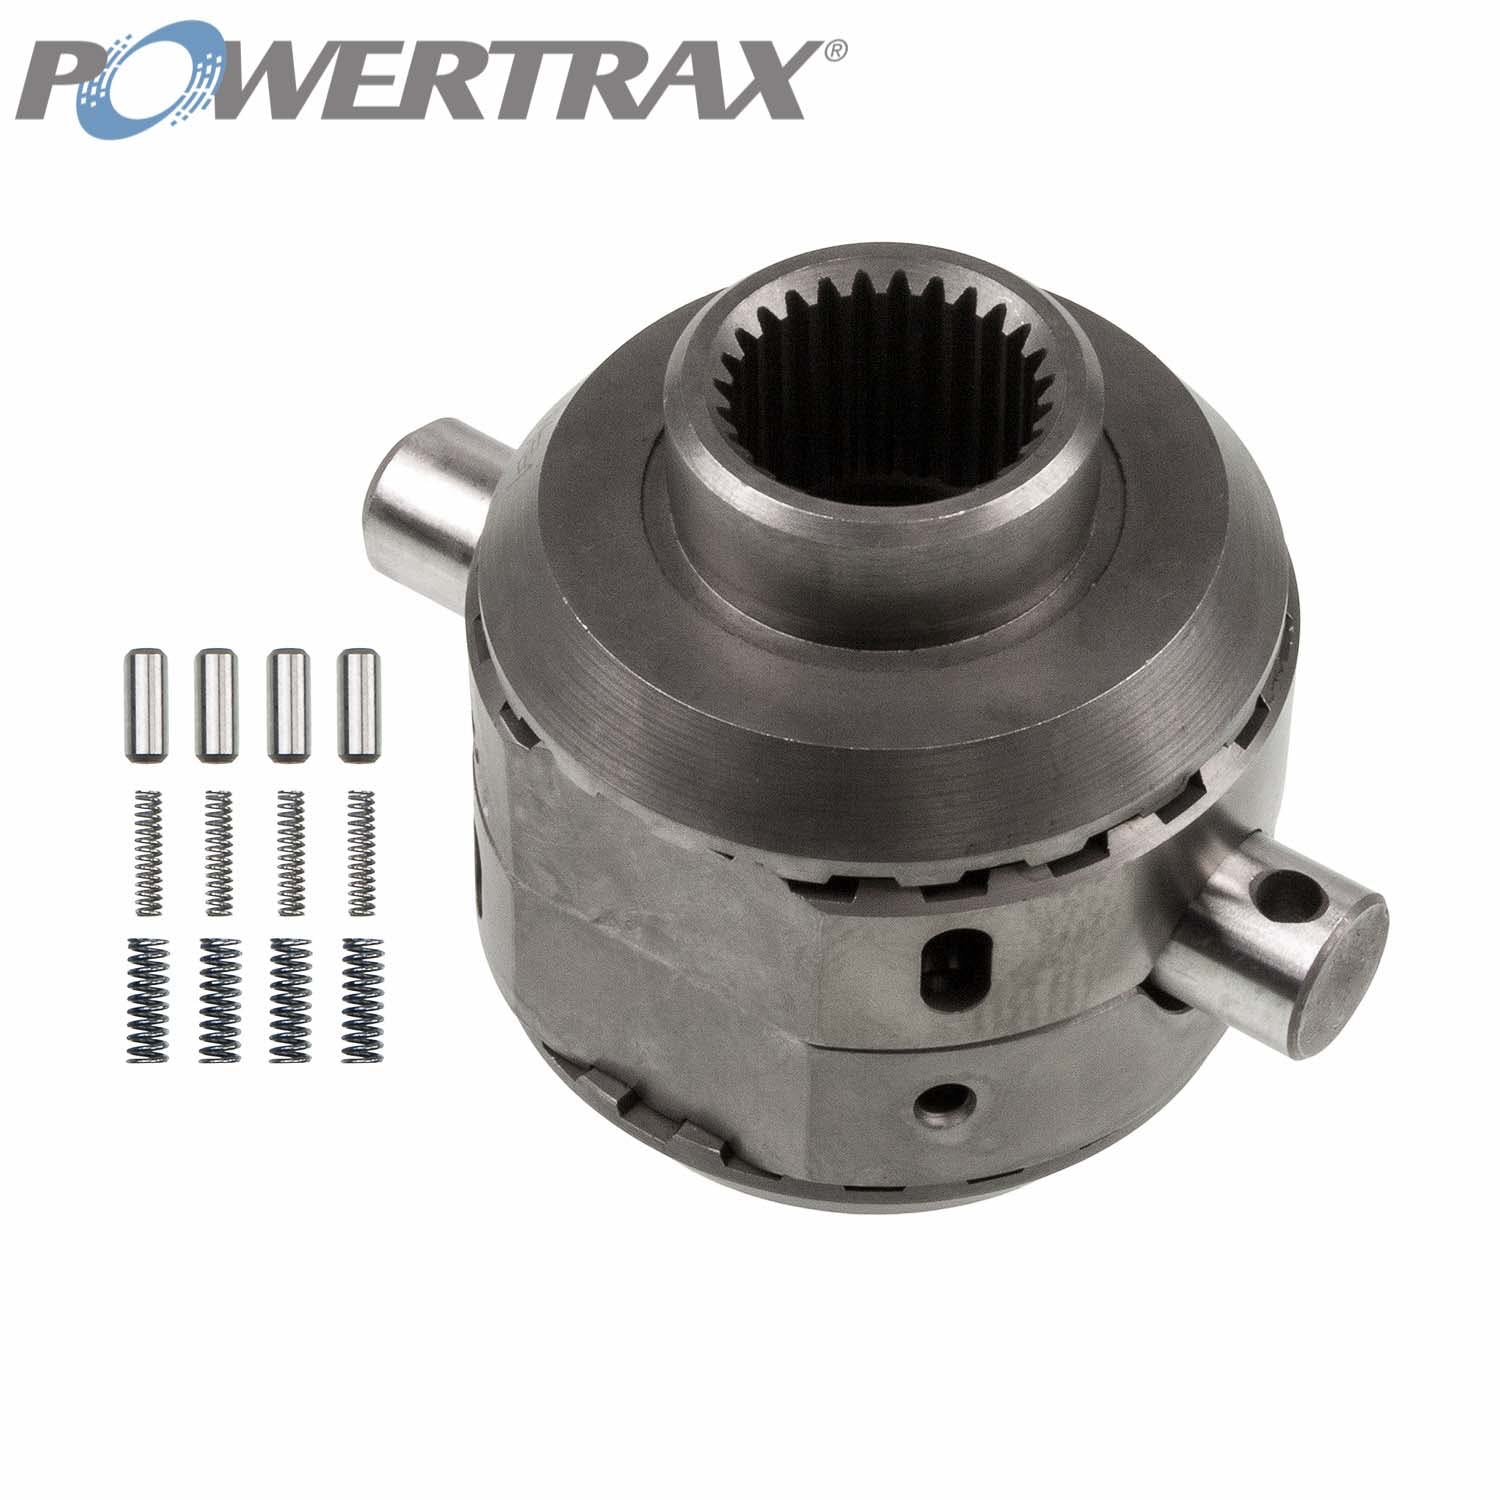 PowerTrax 2210-LR Lock Right Locker